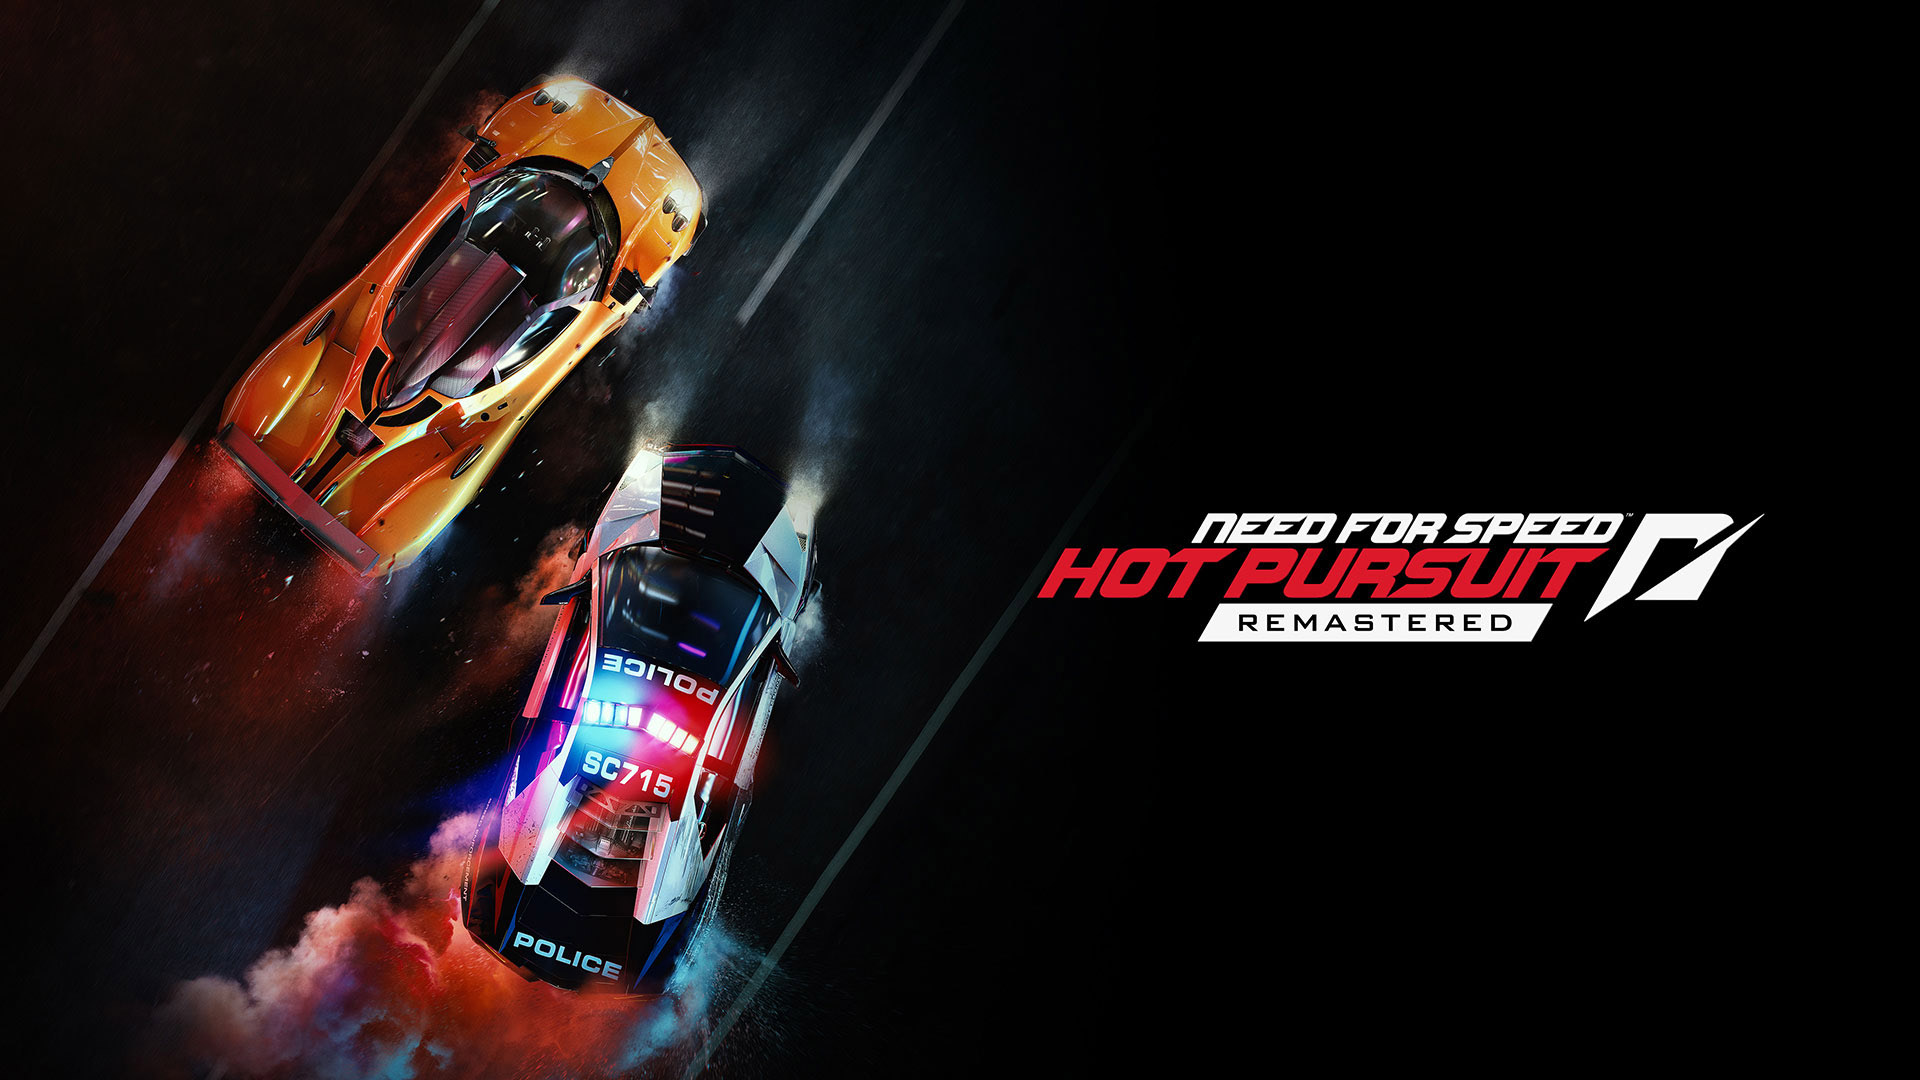 再び 追撃の時が来た Ps4 Xboxone Pc Need For Speed Hot Pursuit Remastered が本日発売 Game Watch